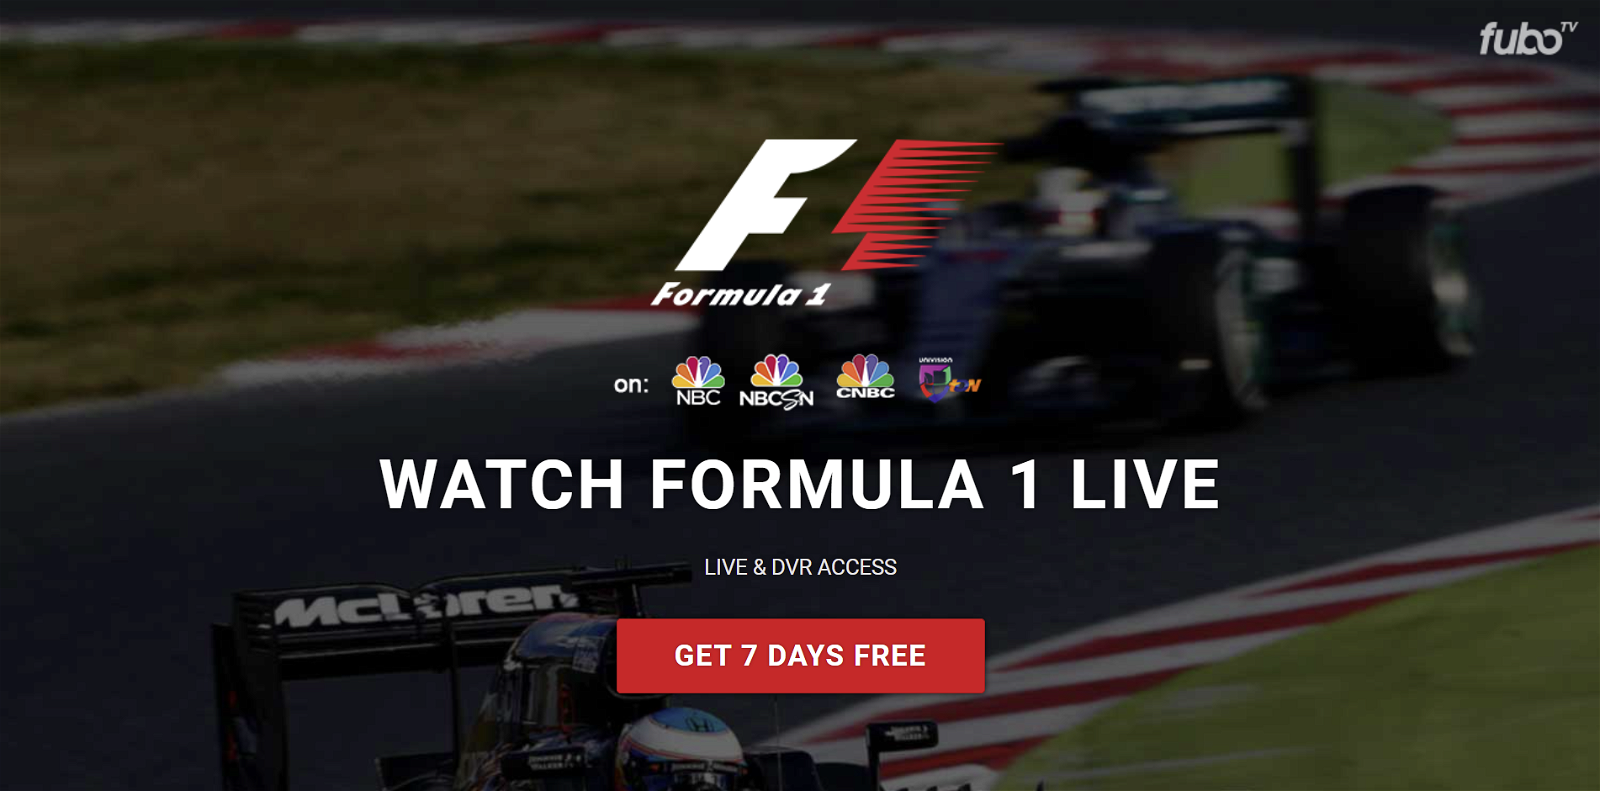 Watch Formula 1 live